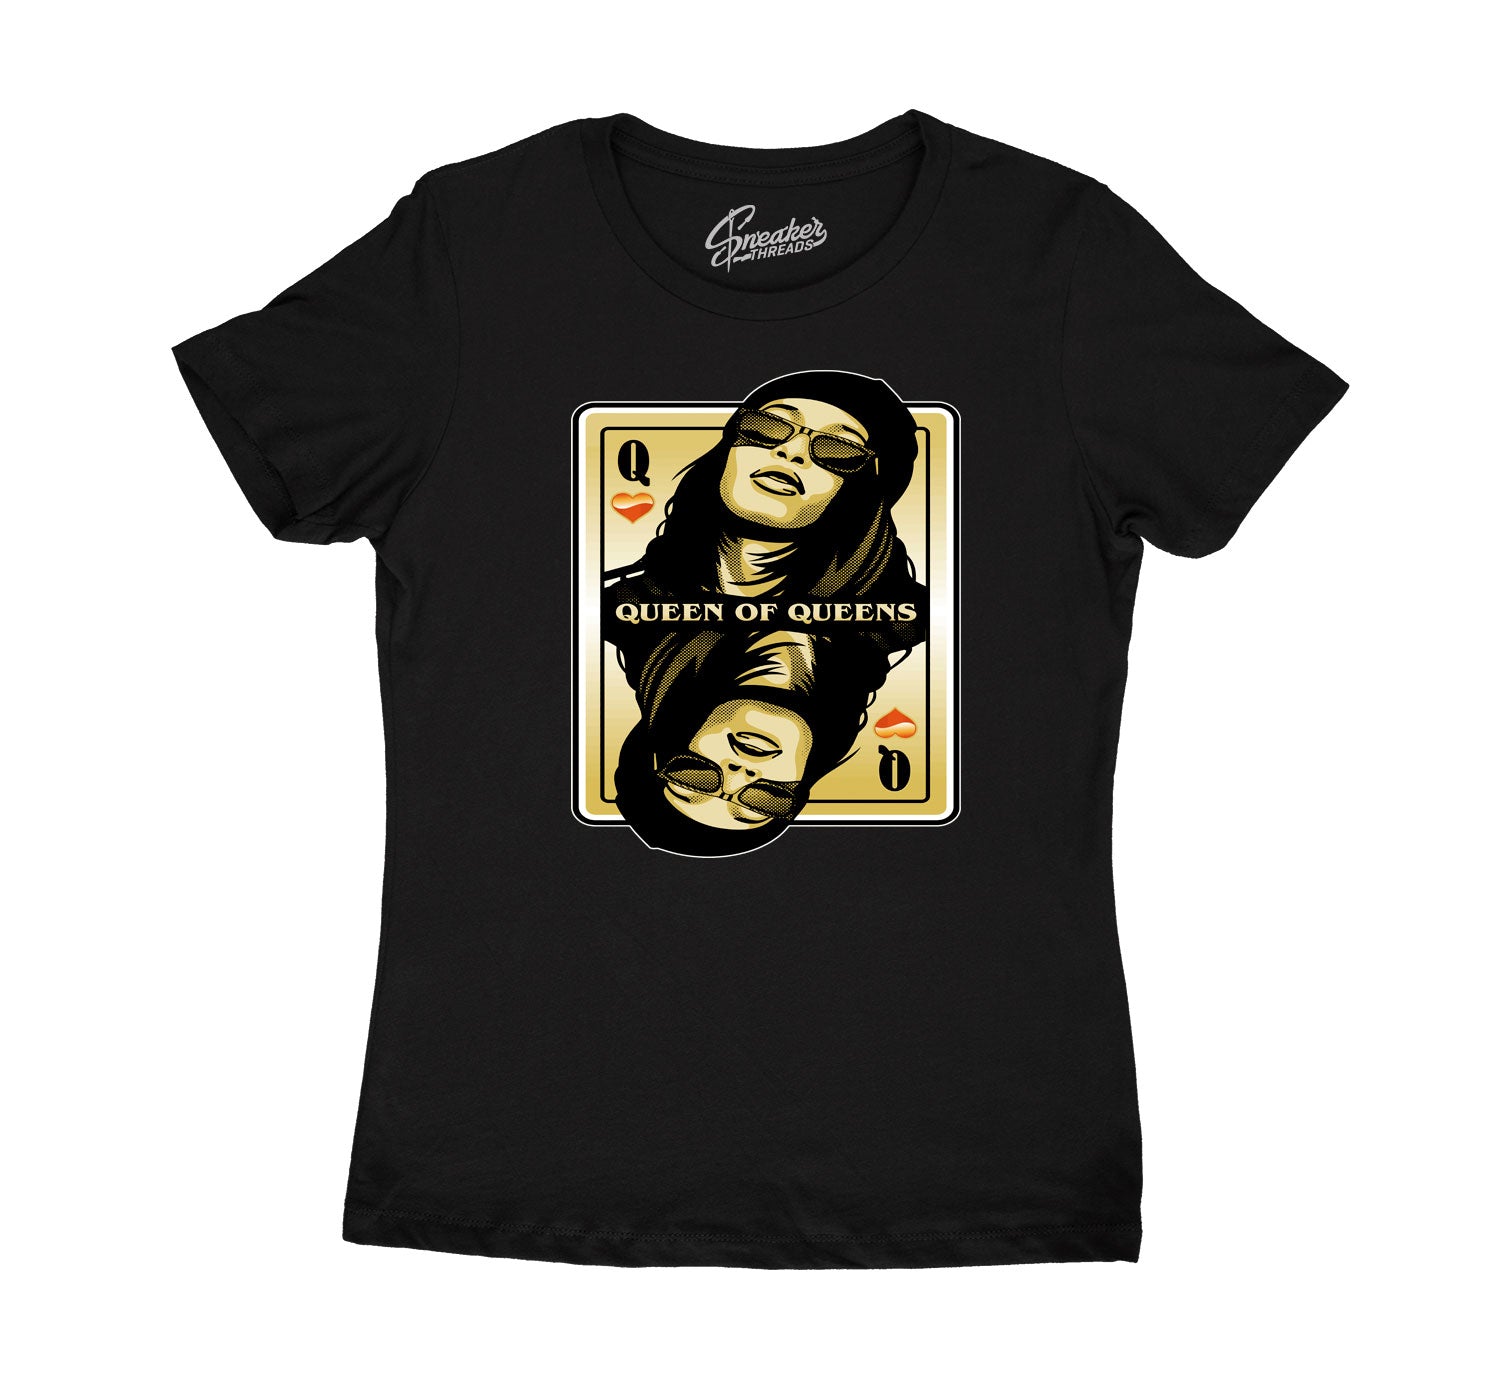 Womens Gold Glitter 13 Shirt - Queen Of Queens - Black